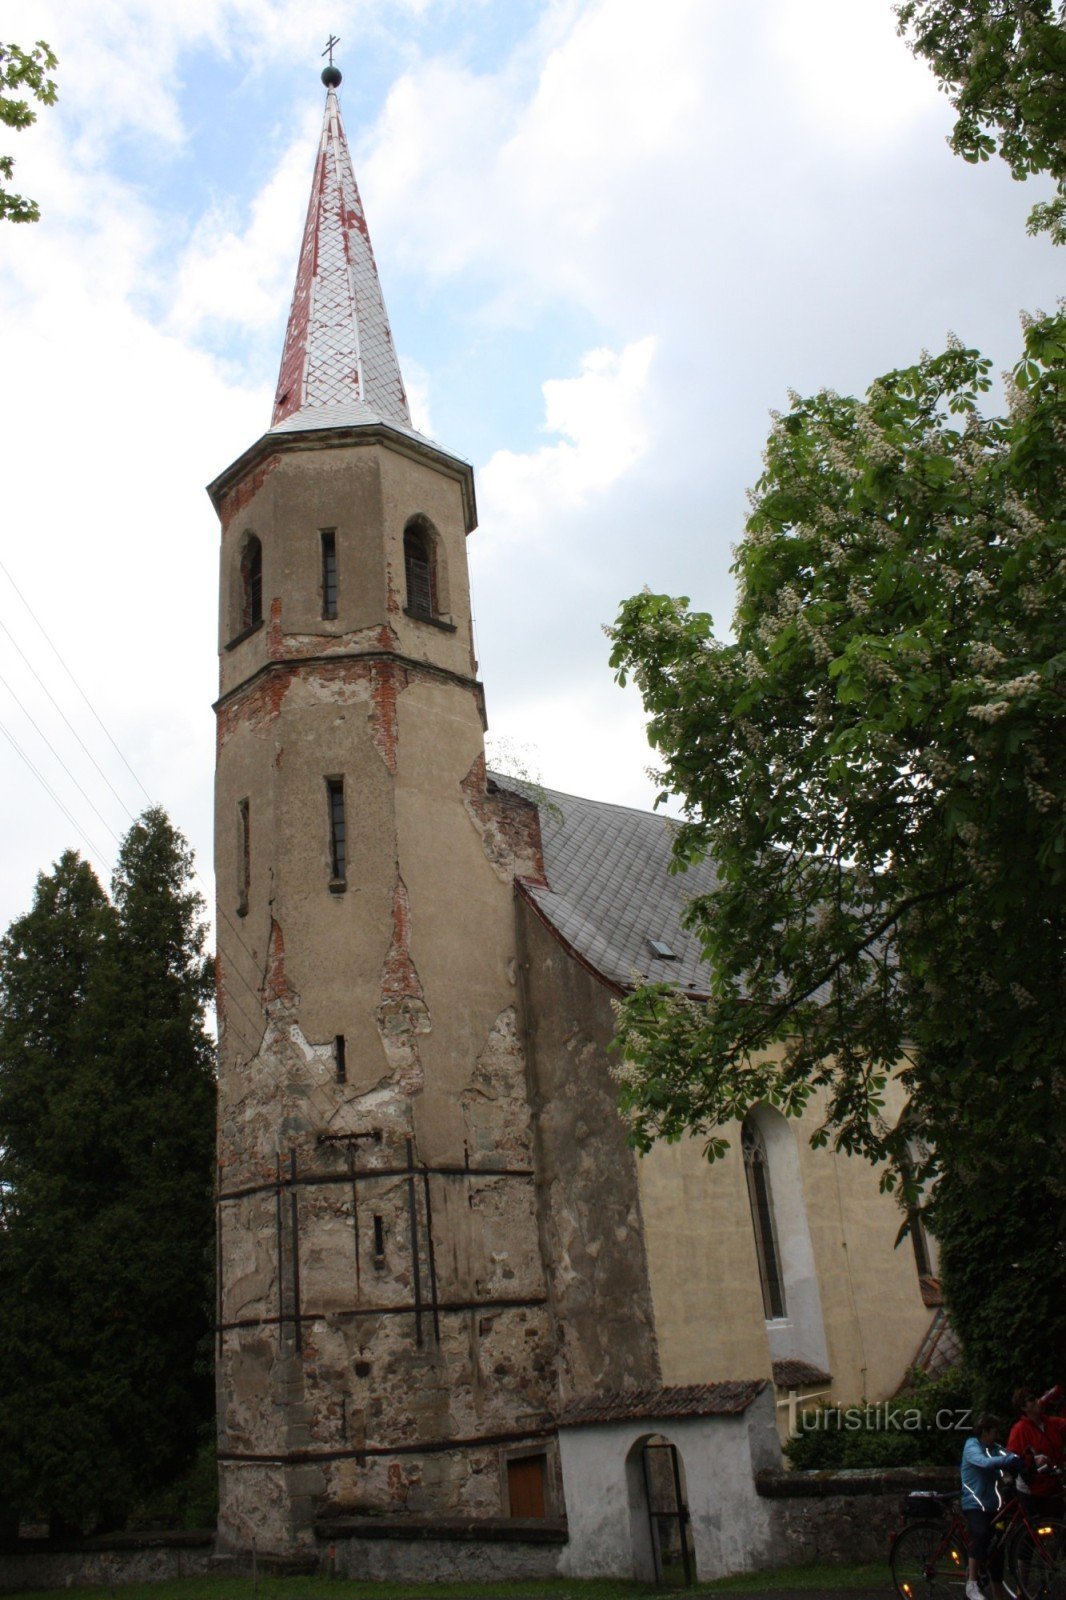 Twee monumenten van de nederzetting Práčov - de kerk en de watertoren